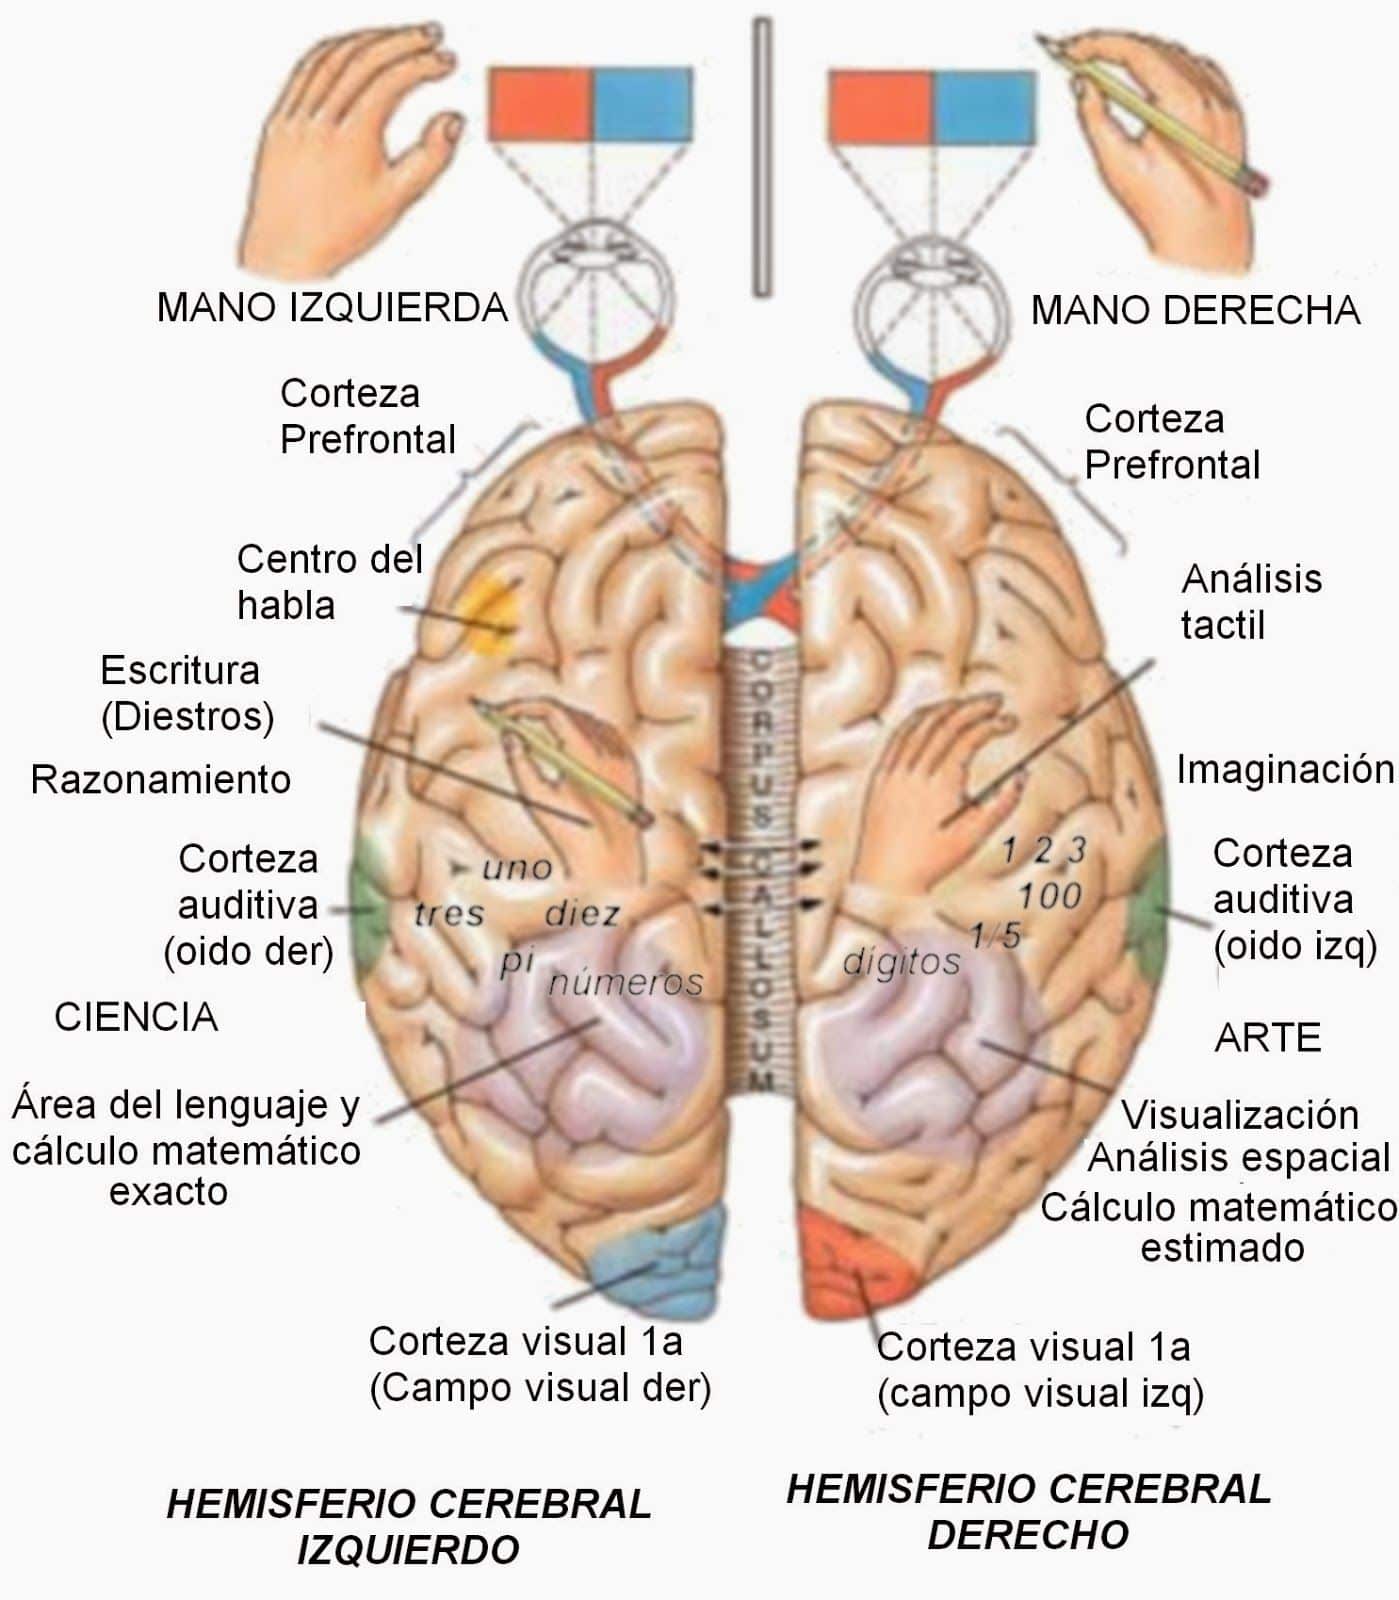 Межполушарные взаимодействия головного мозга